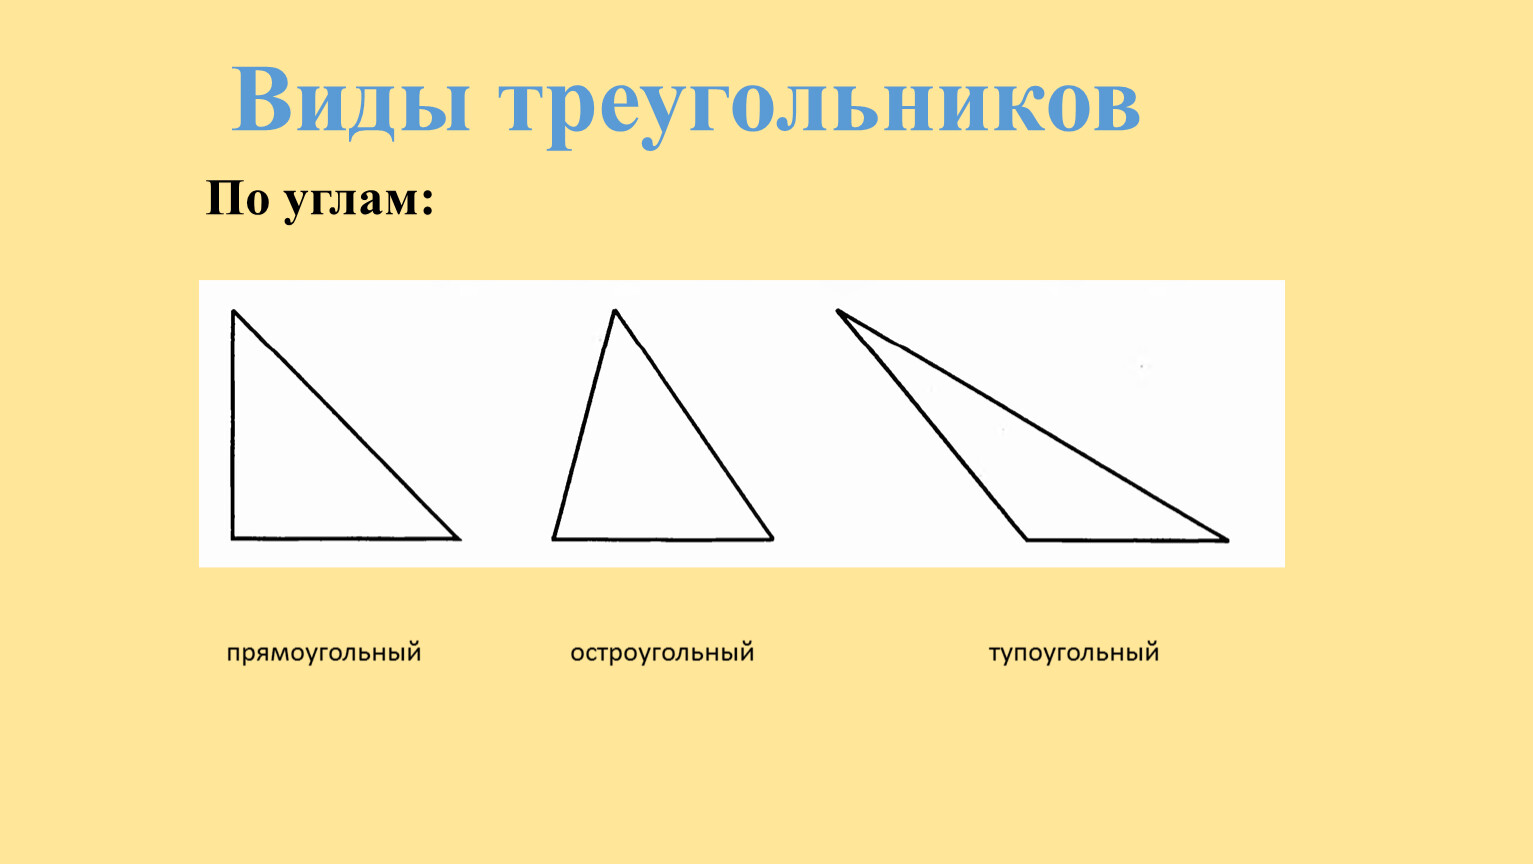 Остроугольный и тупоугольный треугольник